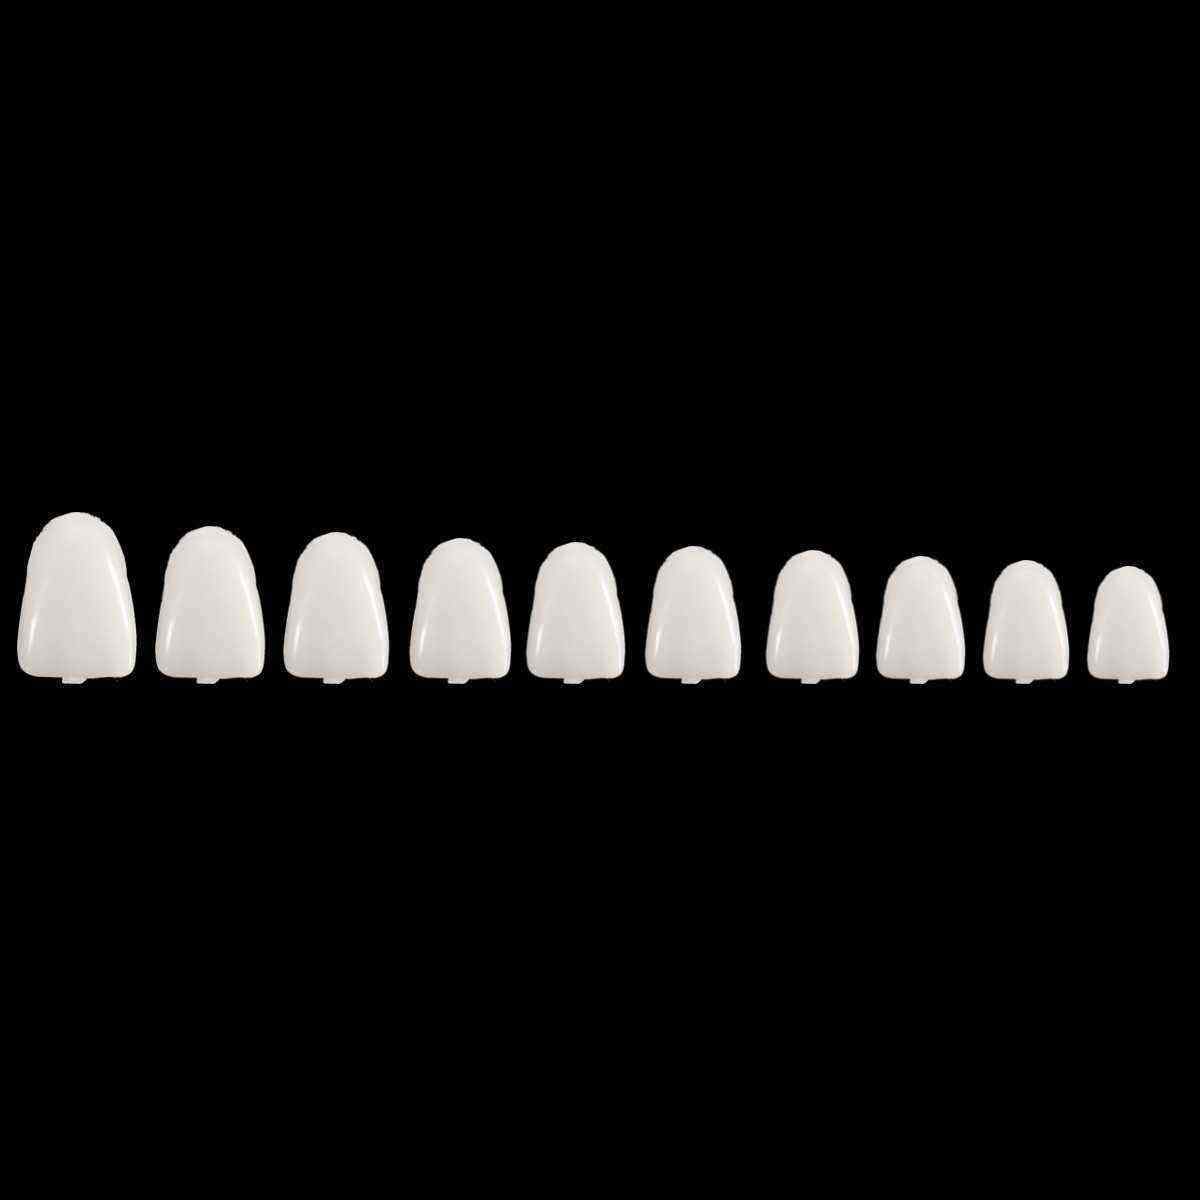 1-Box-Dental-Temporary-Crown-Veneers-Material-for-Anterior-Molar-Teeth-1144018